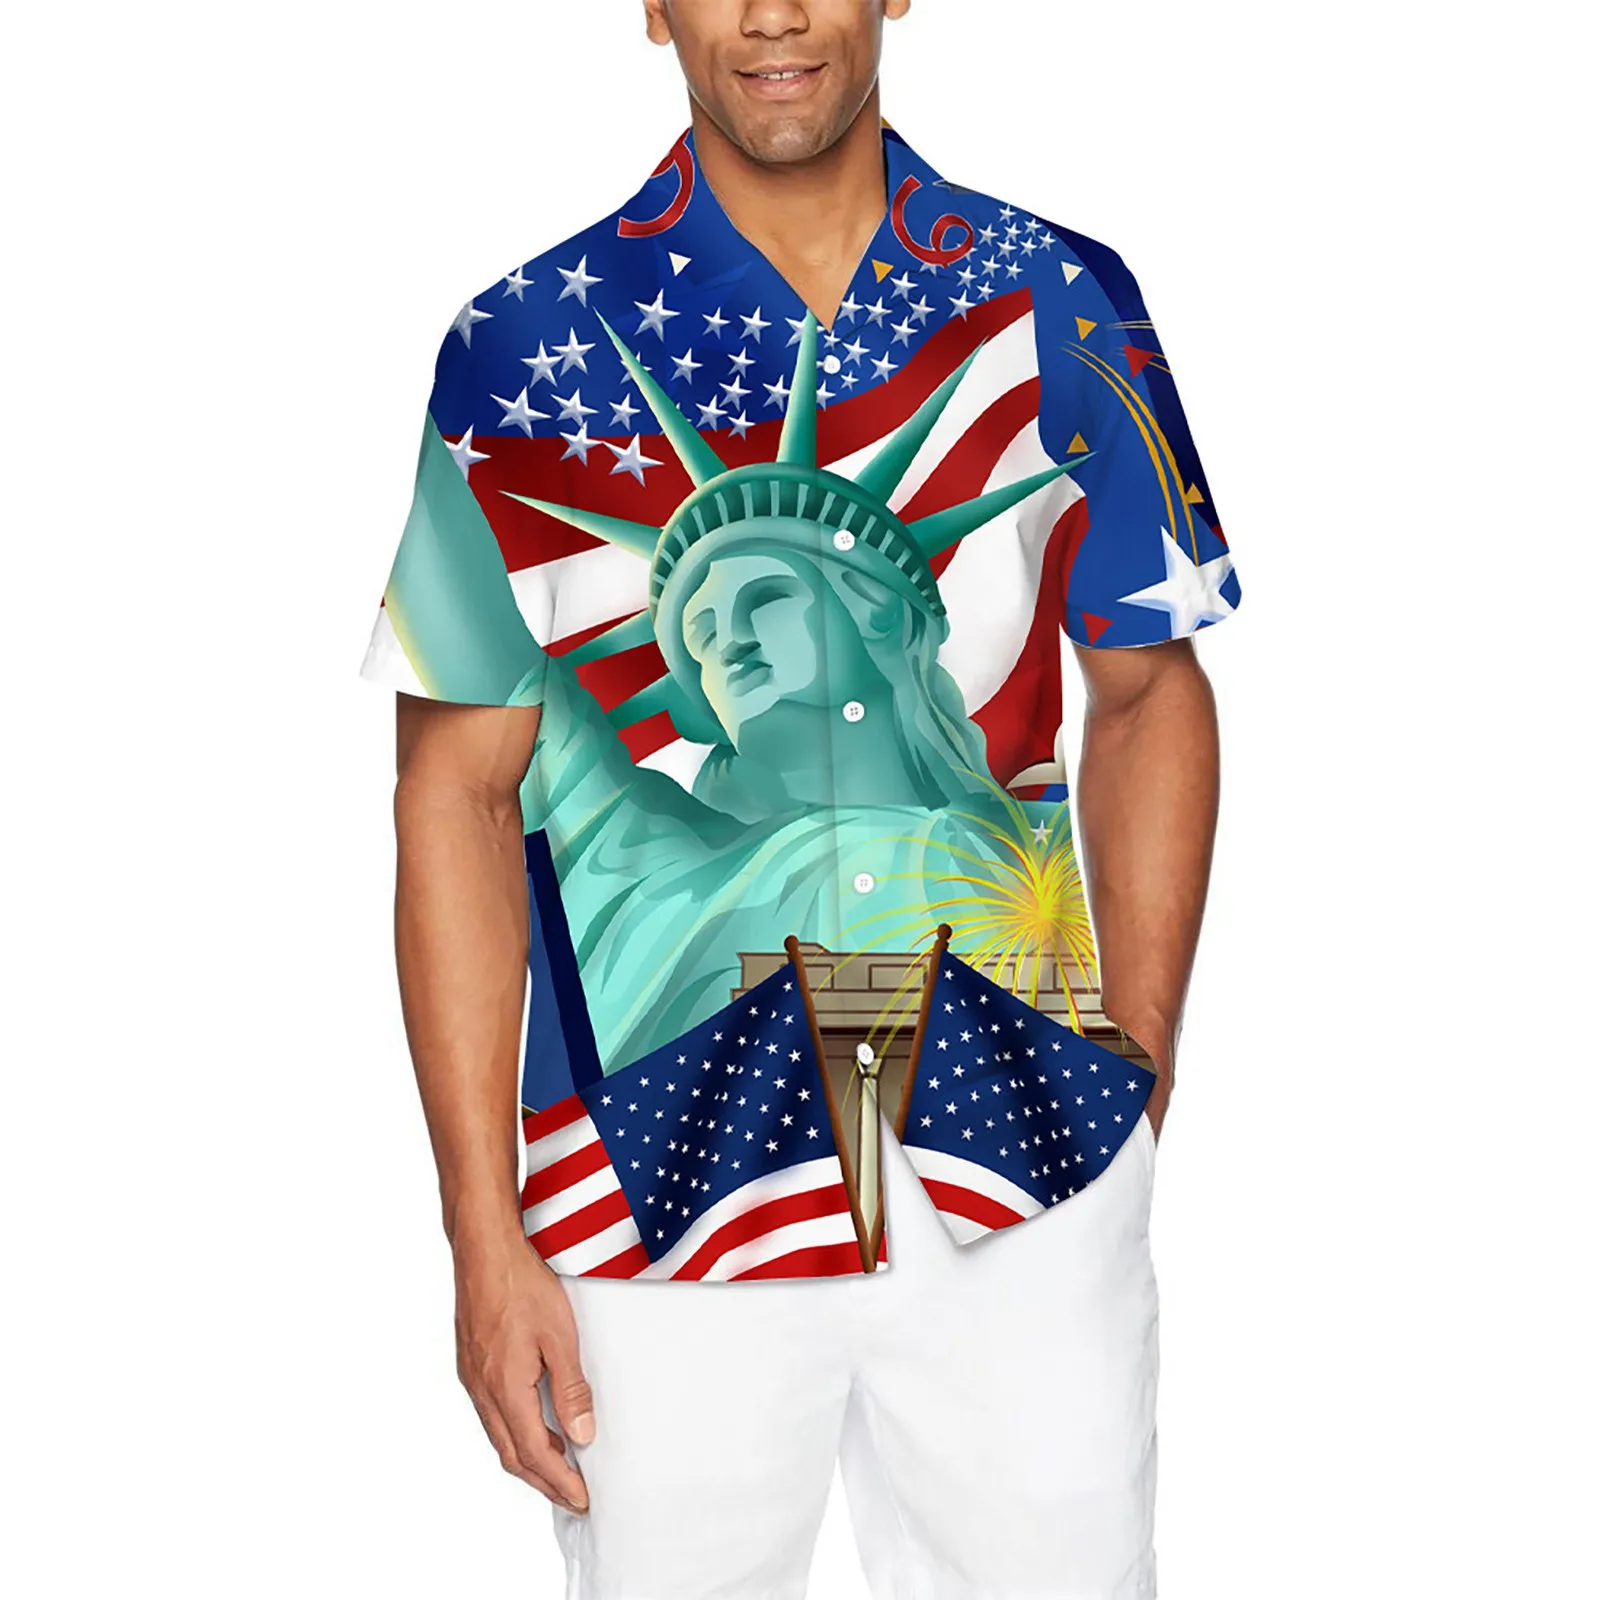 

Мужская Модная и удобная рубашка с цифровым 3D принтом, на пуговицах, отворот, День Независимости, короткий рукав, топ, рубашка, короткий рука...